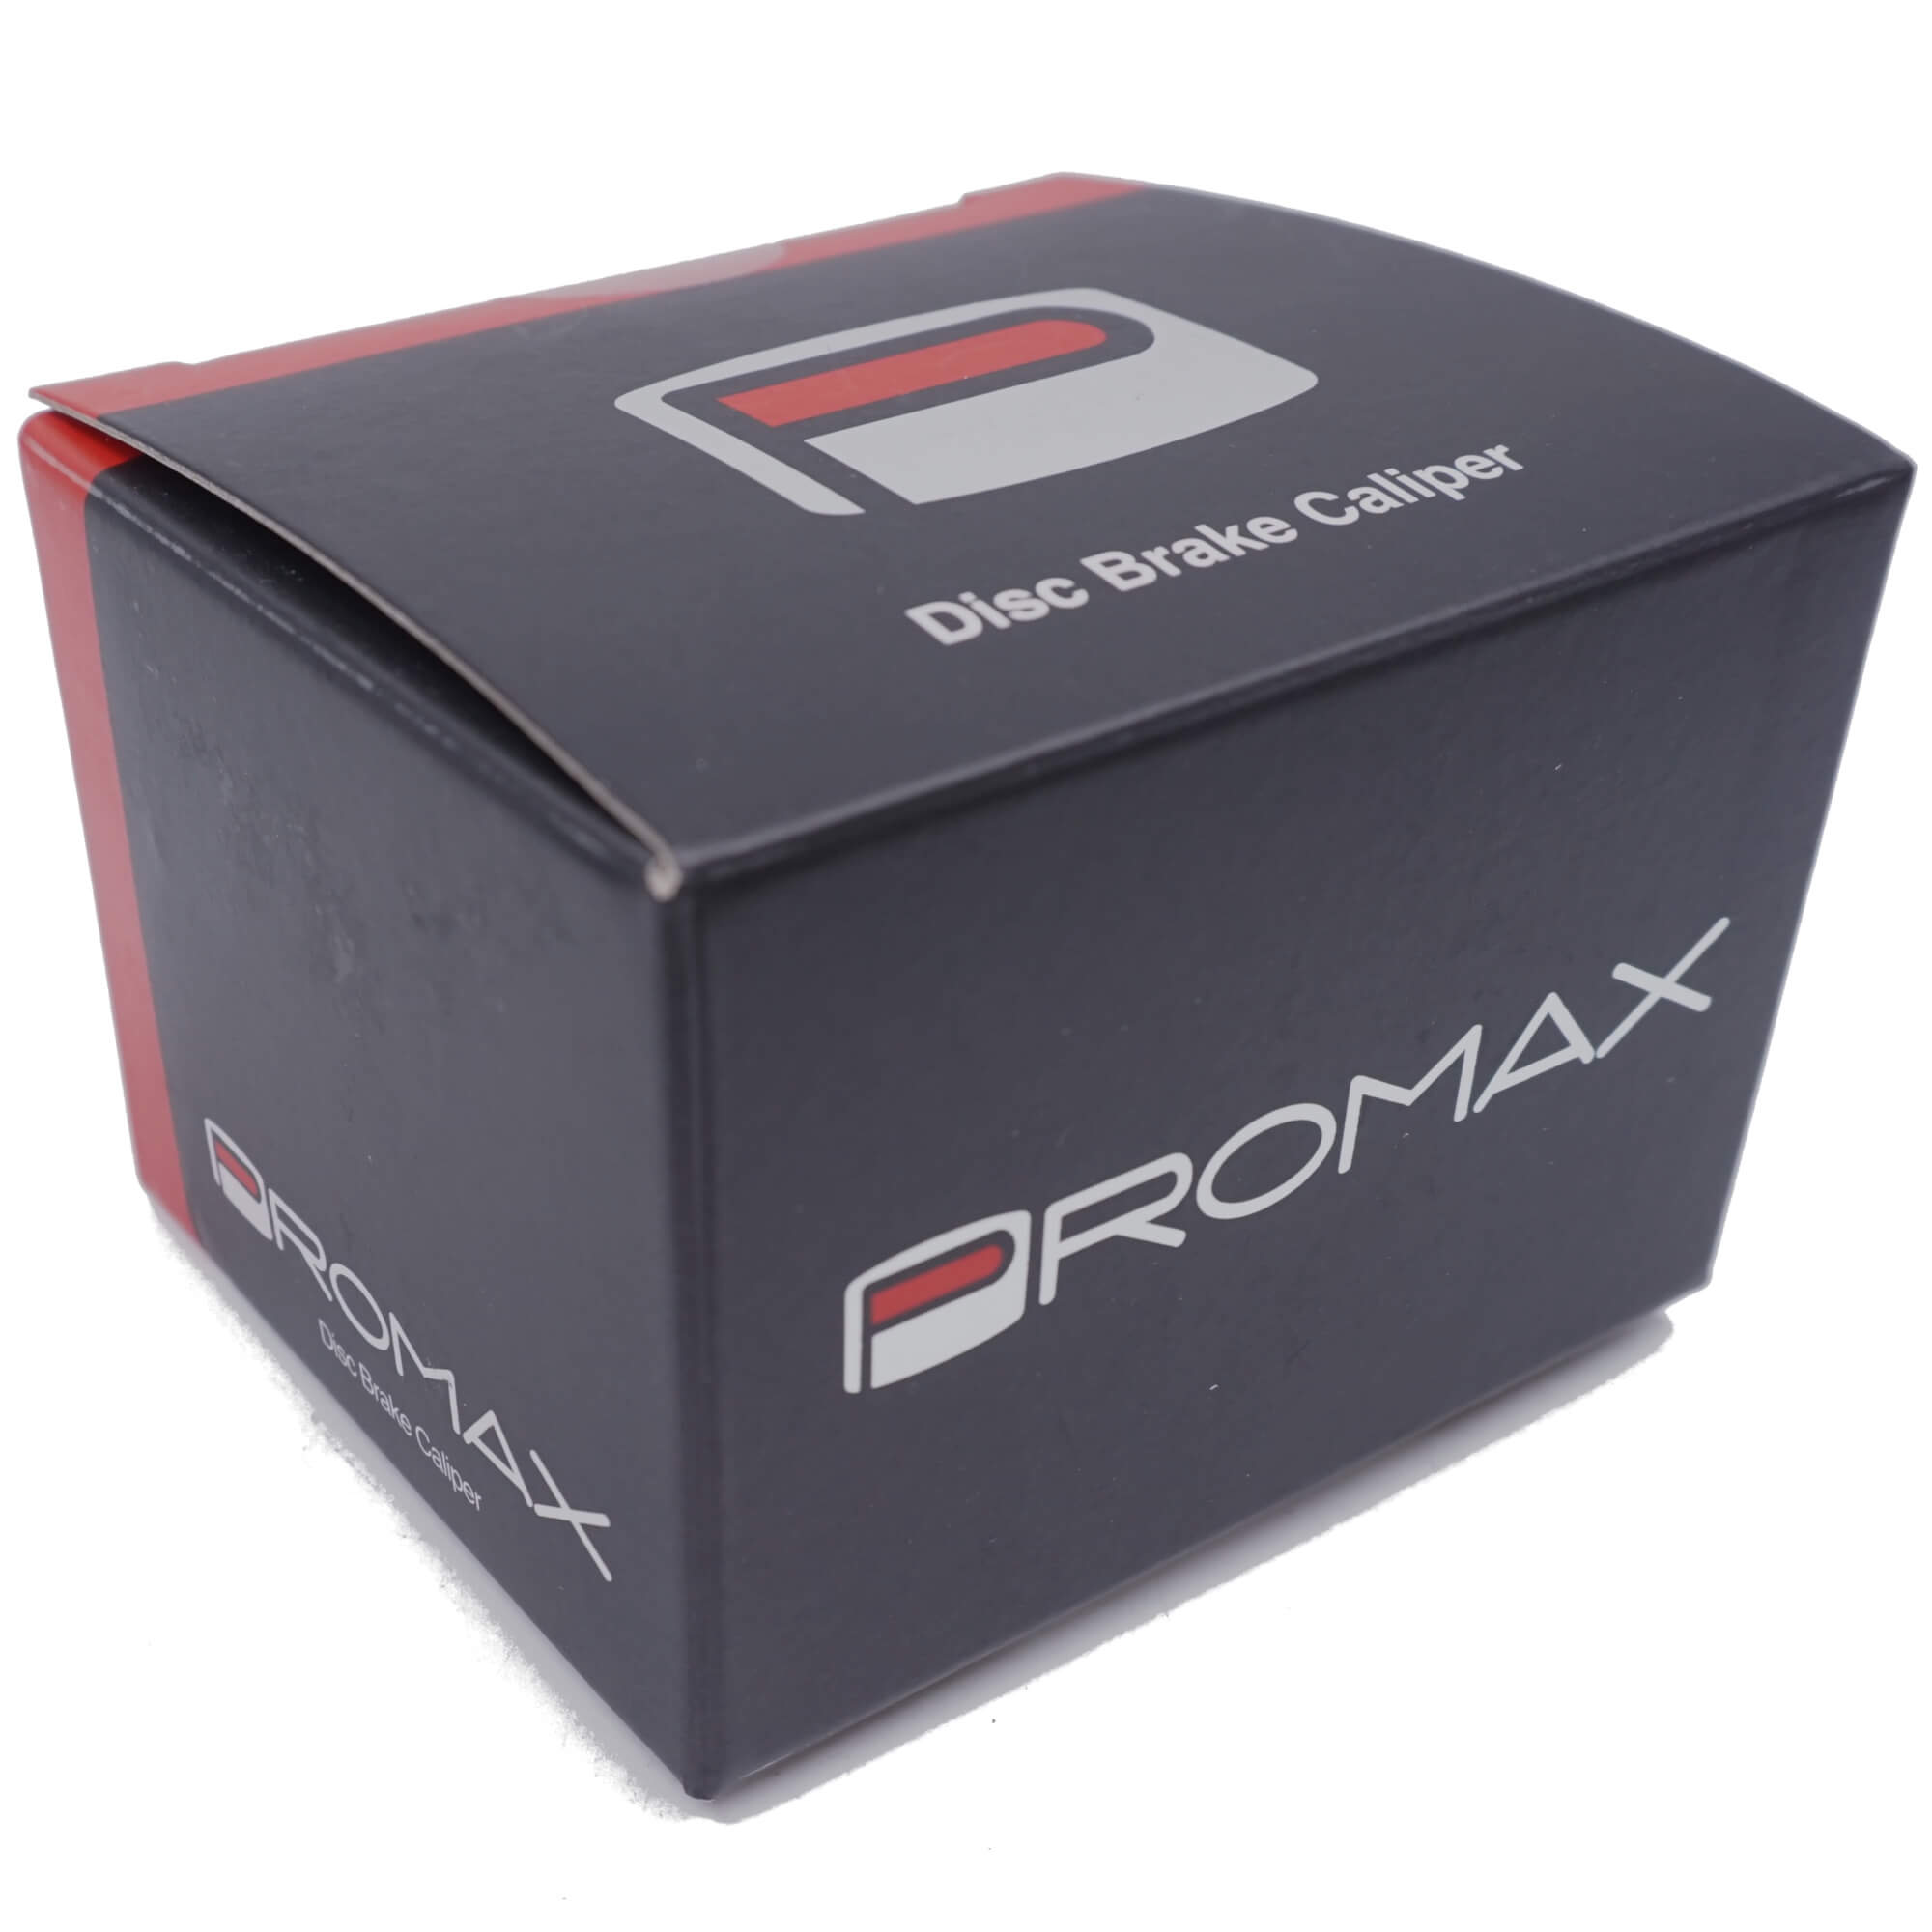 Promax Render DSK-717 Mechanical Disc Brake Caliper